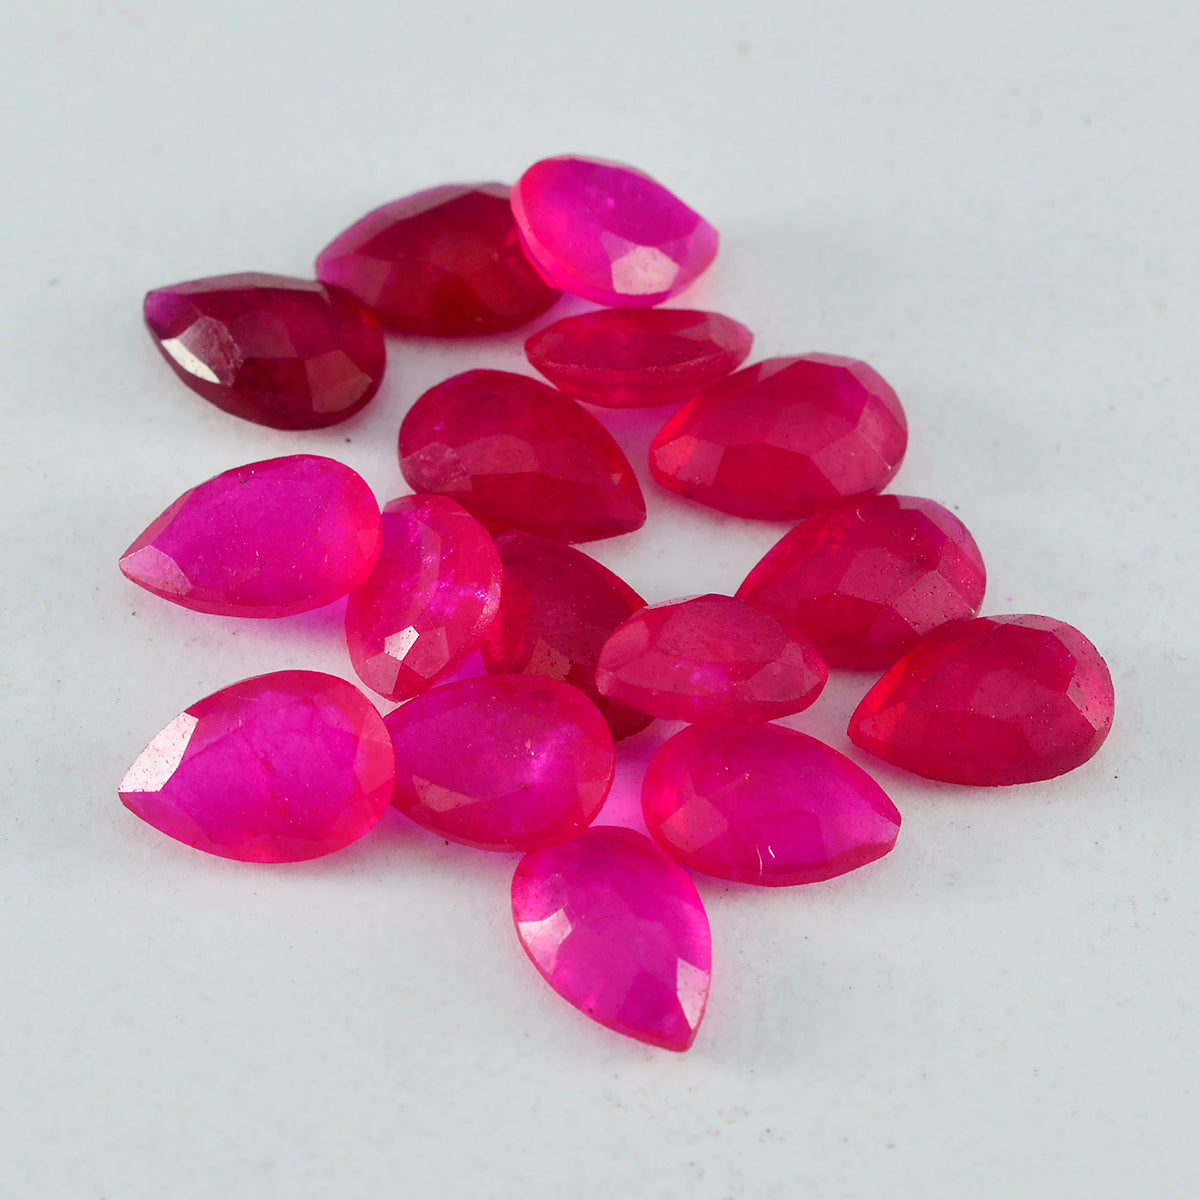 riyogems 1 pezzo di vero diaspro rosso sfaccettato 7x10 mm a forma di pera, pietra preziosa di bella qualità